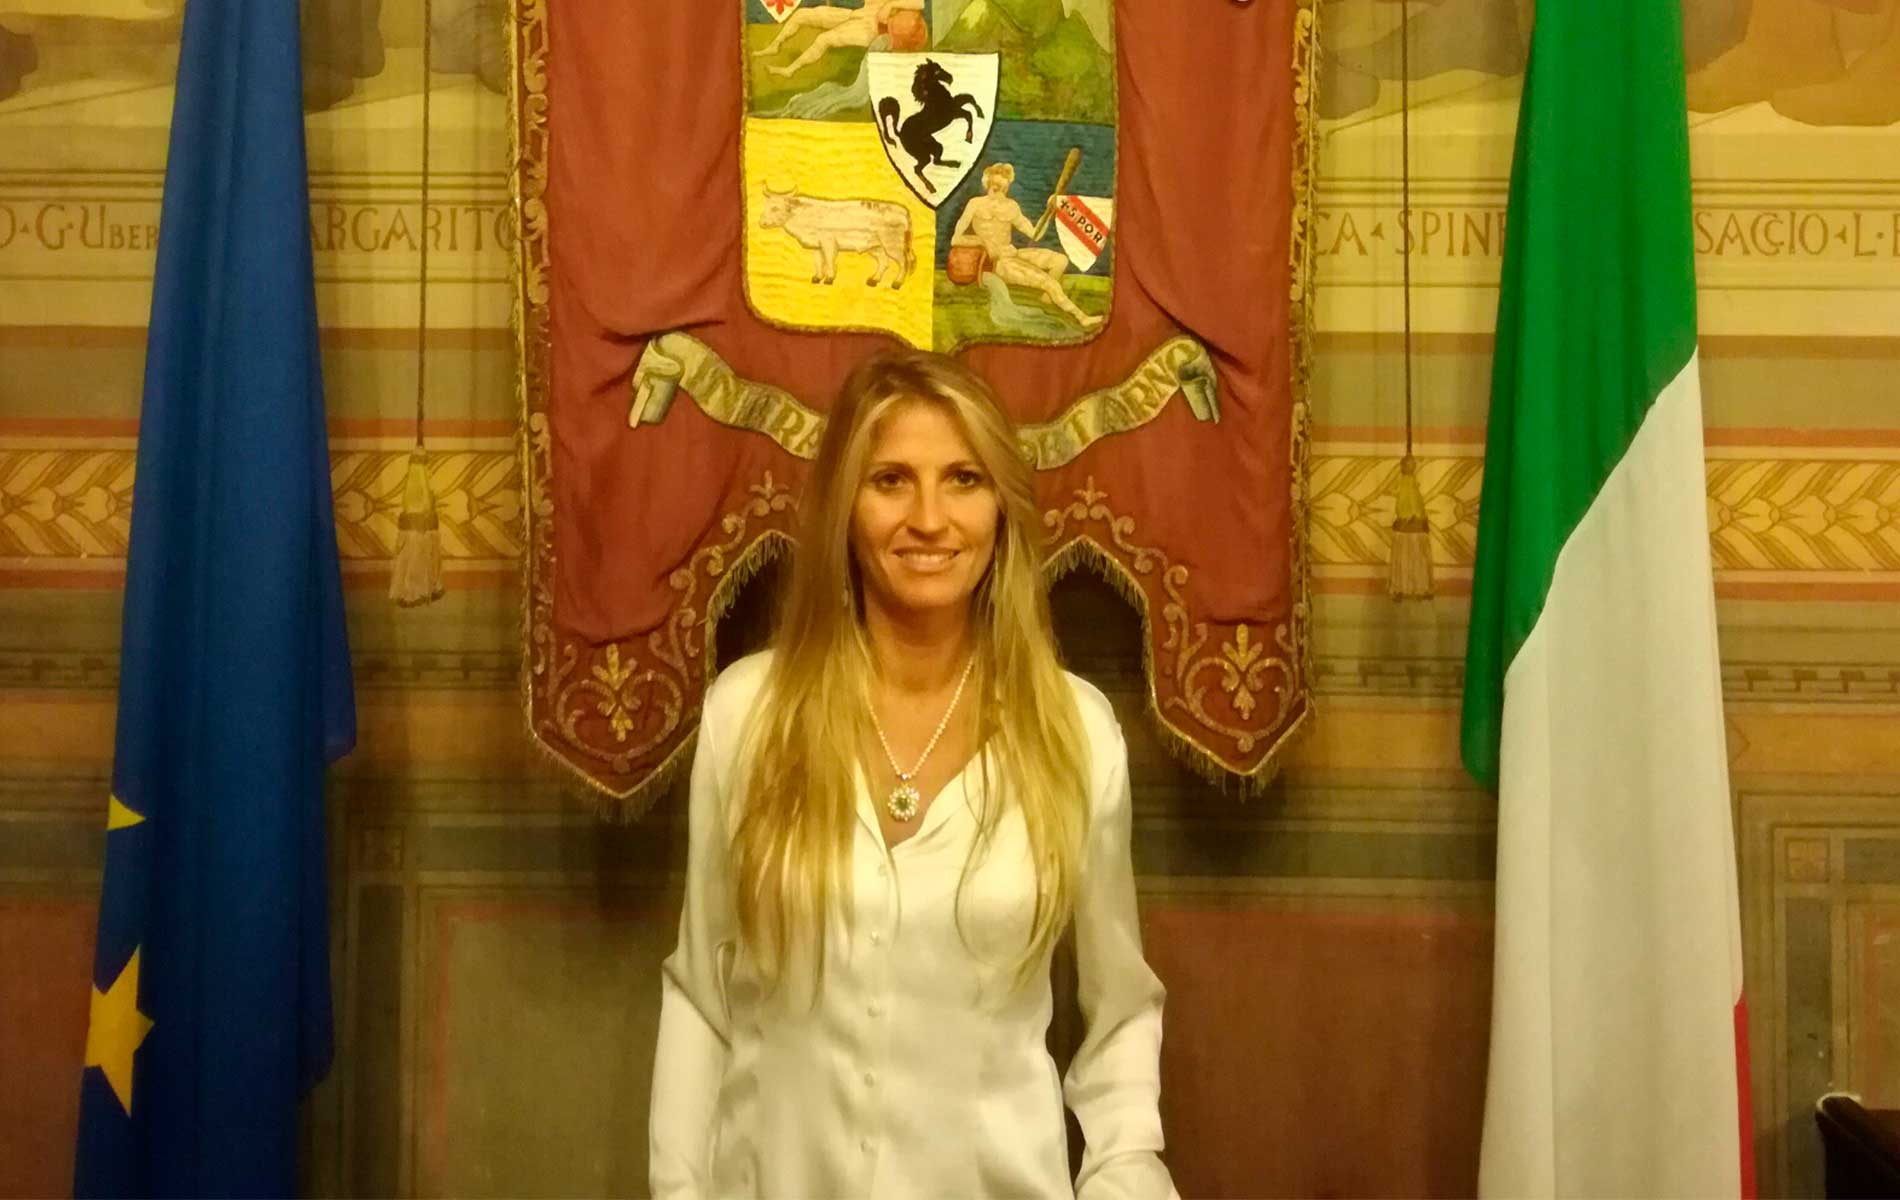 “La Soprintendenza torni ad Arezzo”